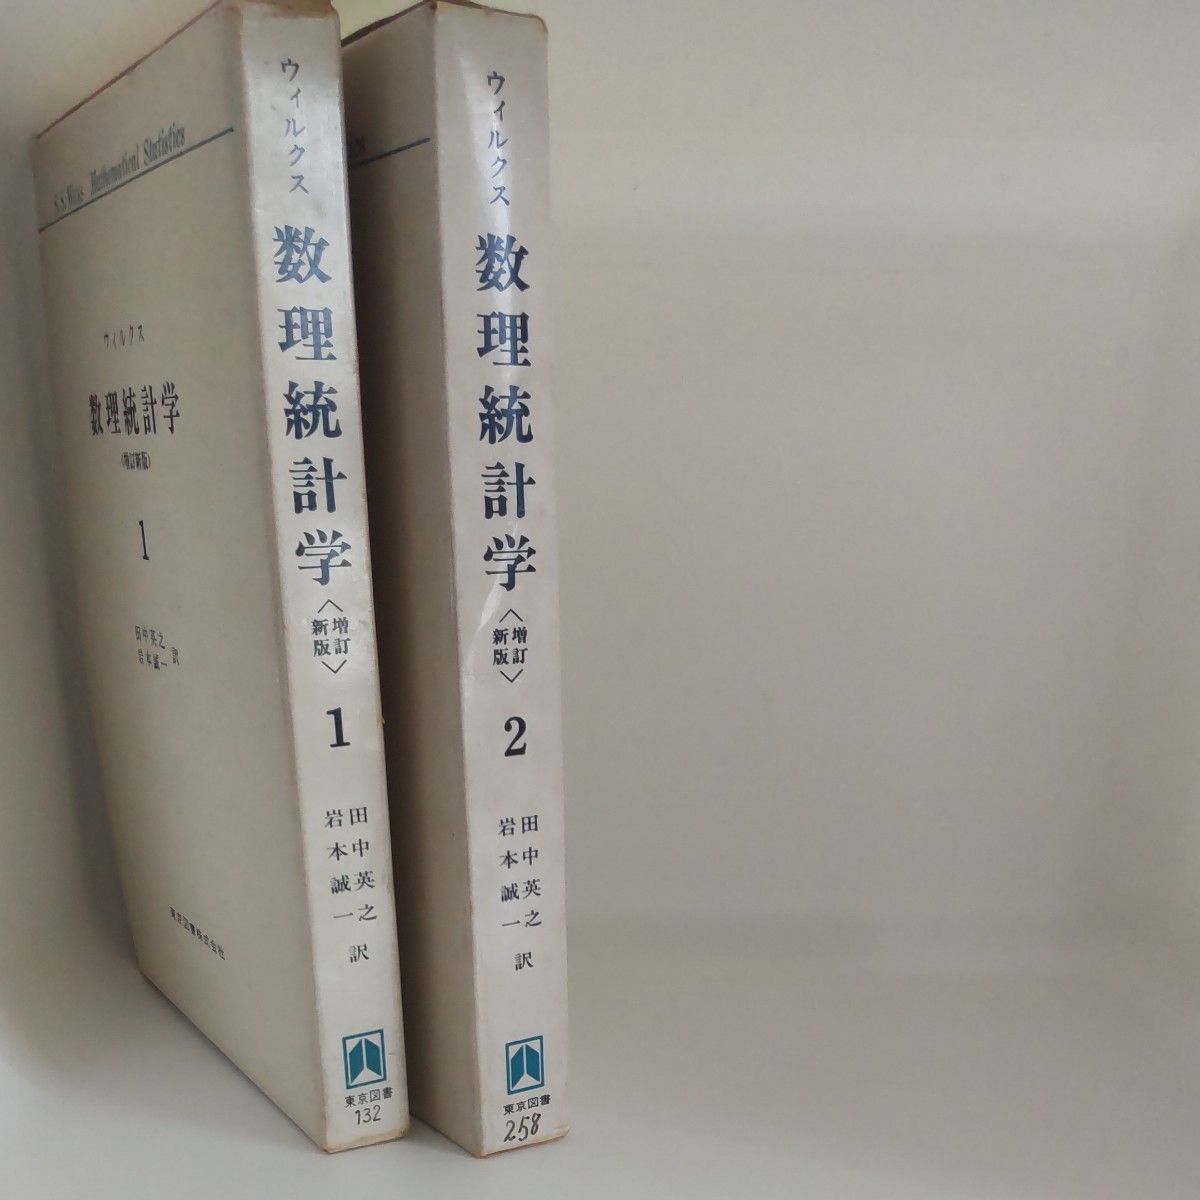 ウィルクス 数理統計学 増訂新版 1 2 田中英之 岩本誠一訳 東京図書